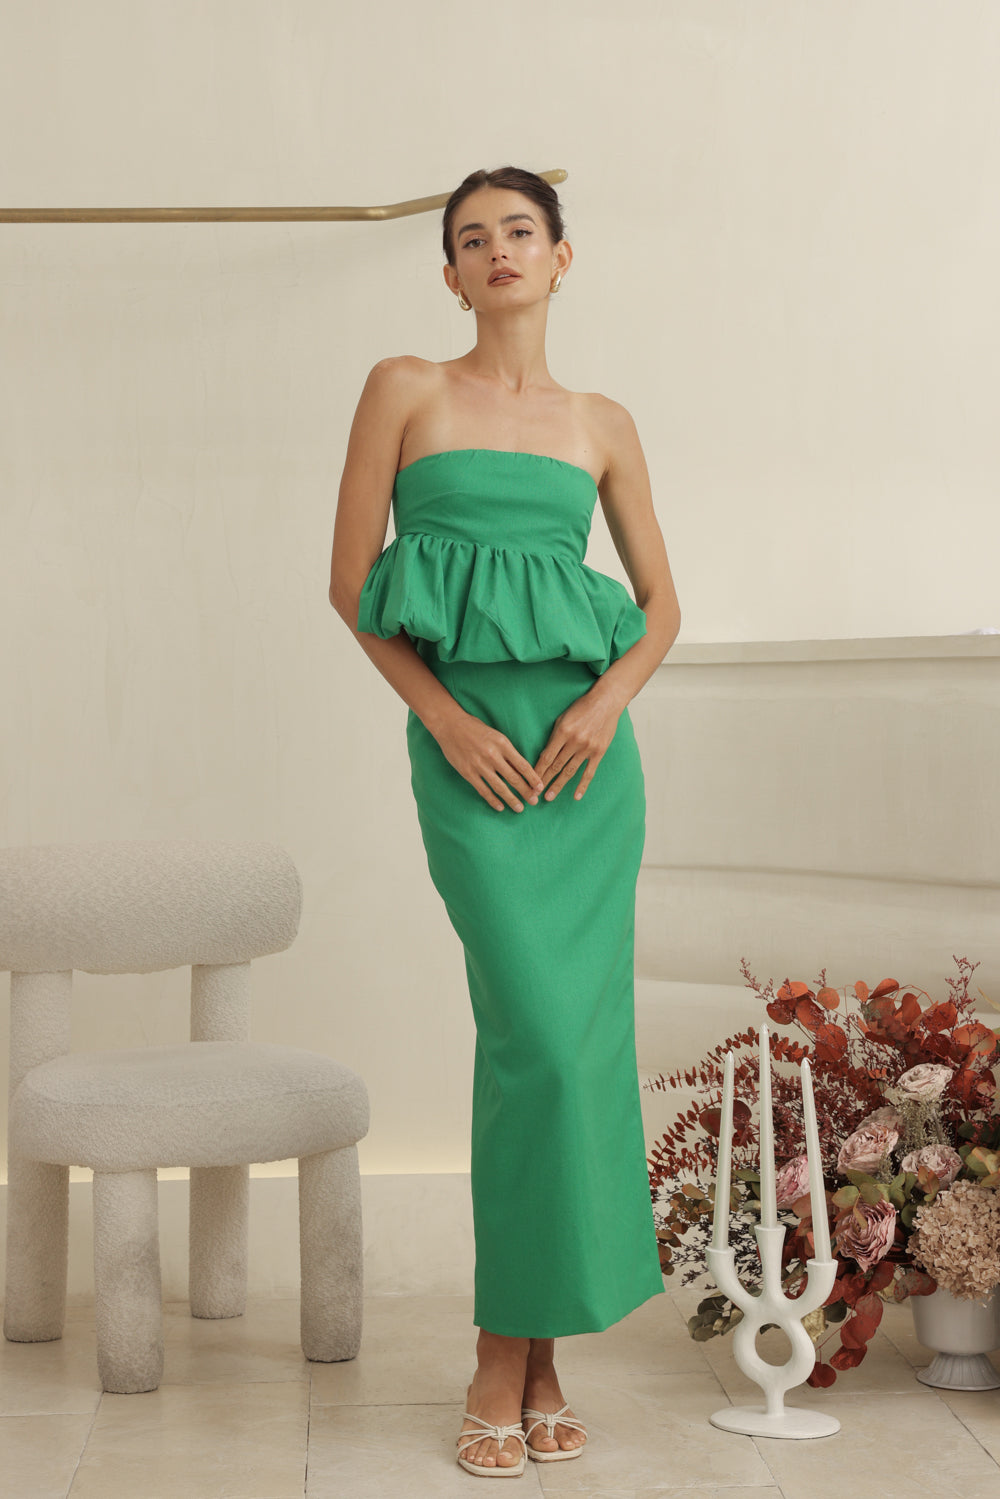 BIJOU DRESS Strapless Peplum Top and Pencil Skirt (Emerald Green Linen)